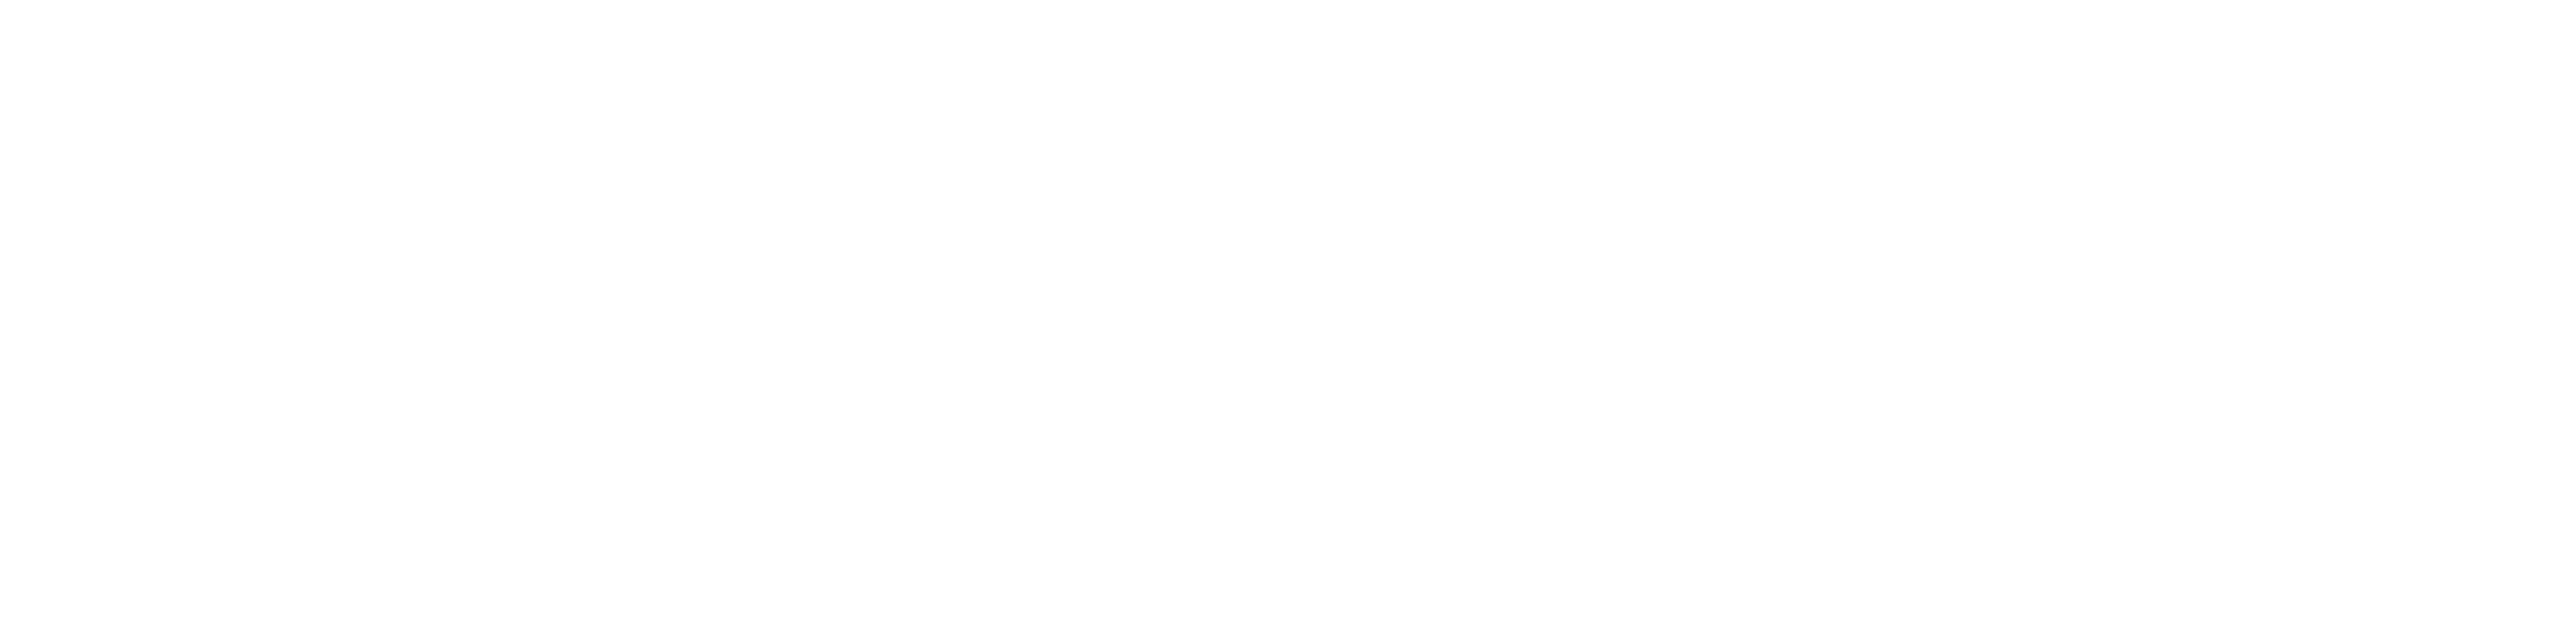 payswitch-company-logo